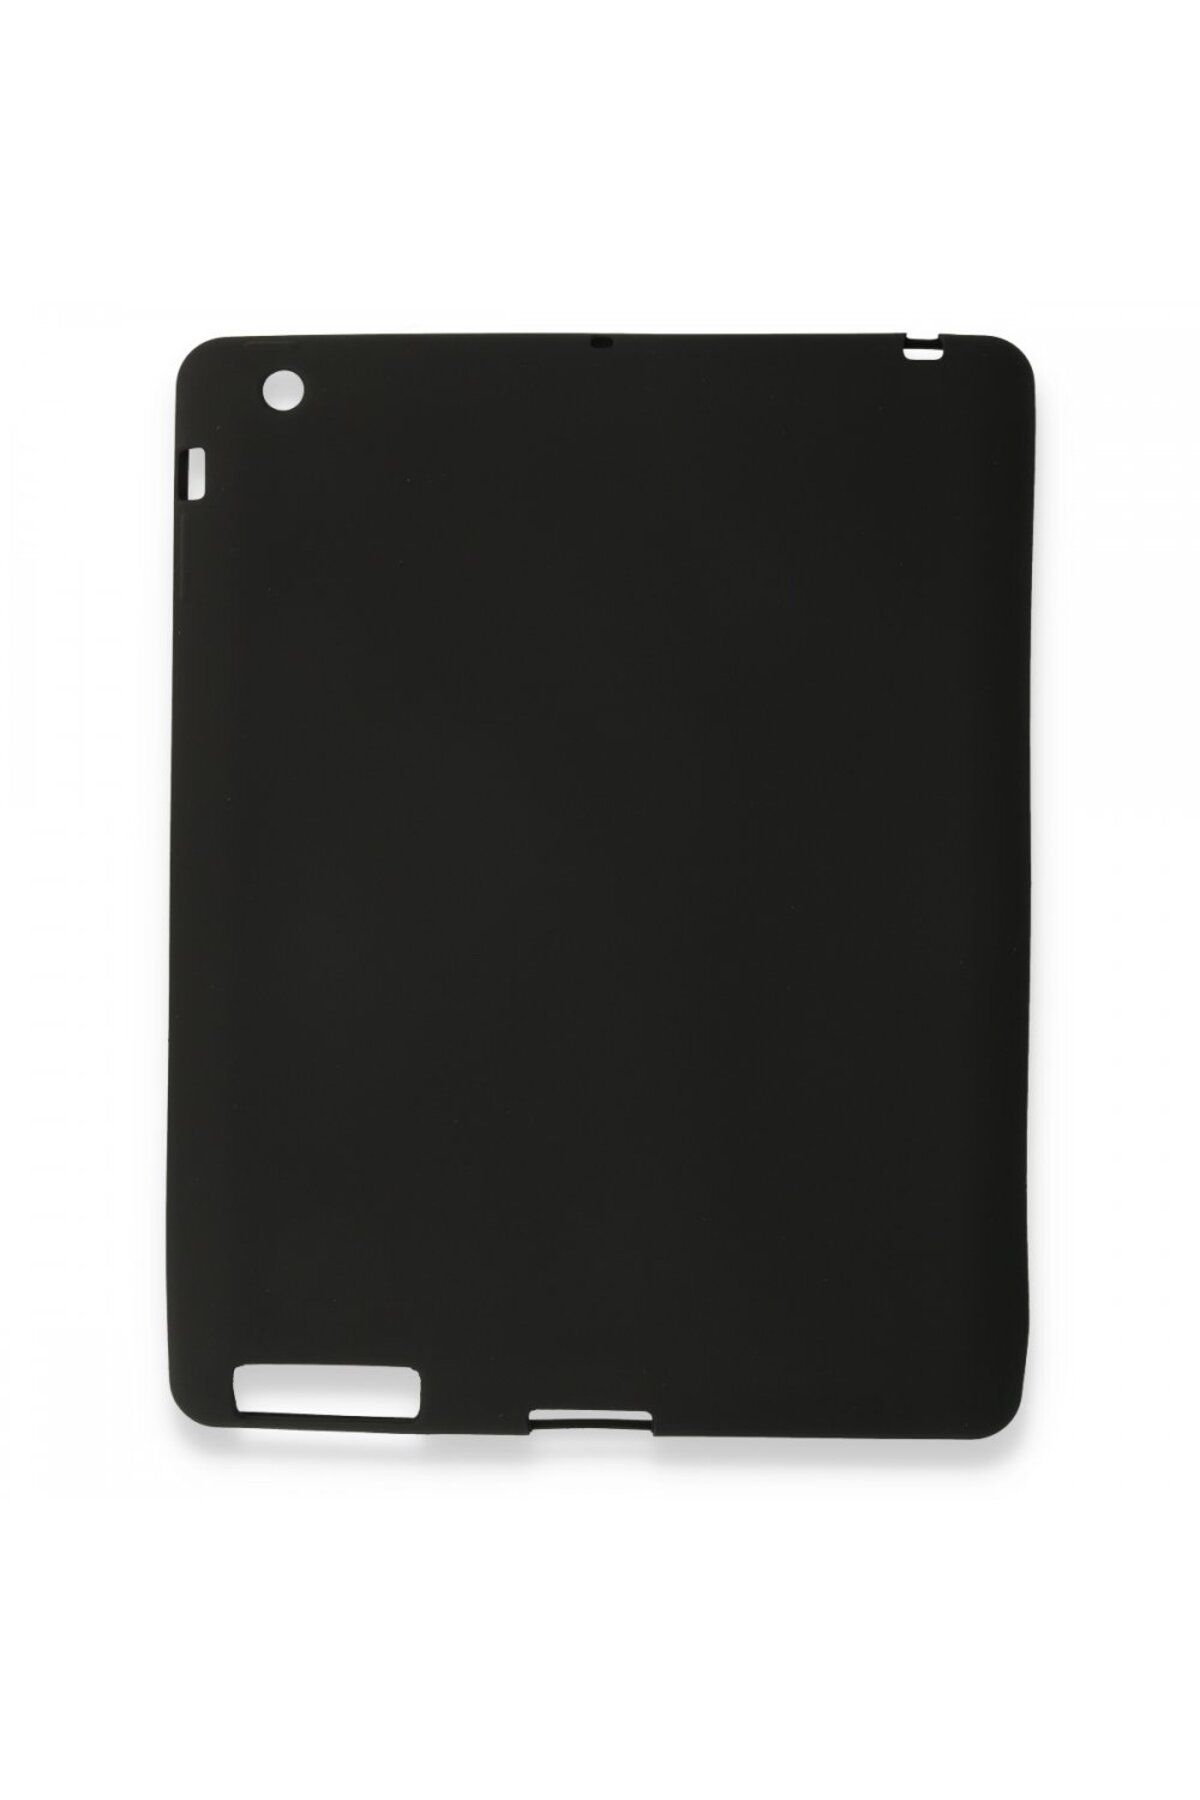 TREND İpad 2 9.7 Uyumlu Kılıf Evo Tablet Silikon - Siyah